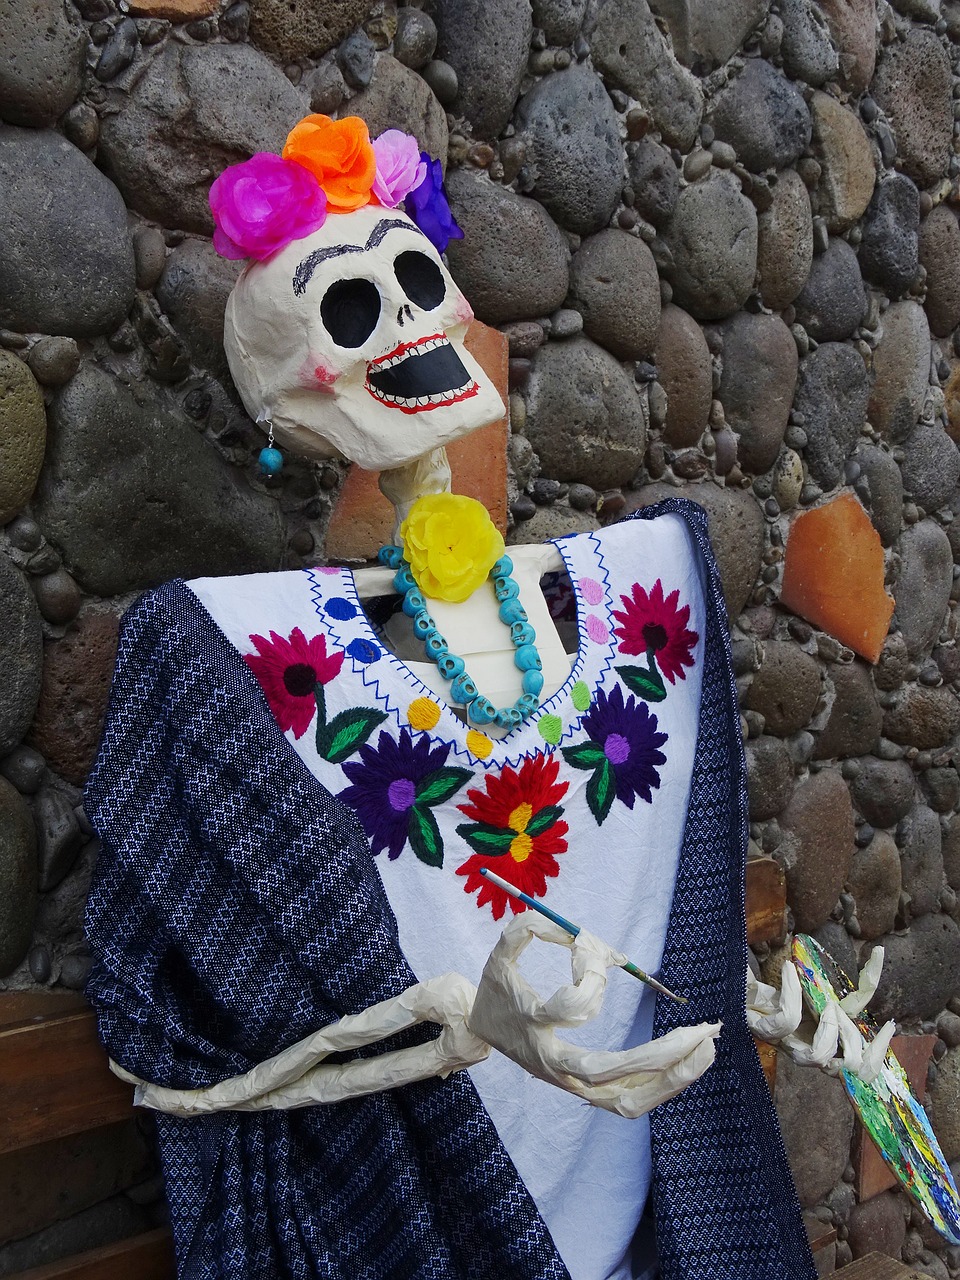 Mirusiųjų Diena, Calaca, Tradicija, Kaukolė, Lapkritis, Meksika, Veracruz, Popierius Mache, Giltinė, Frida